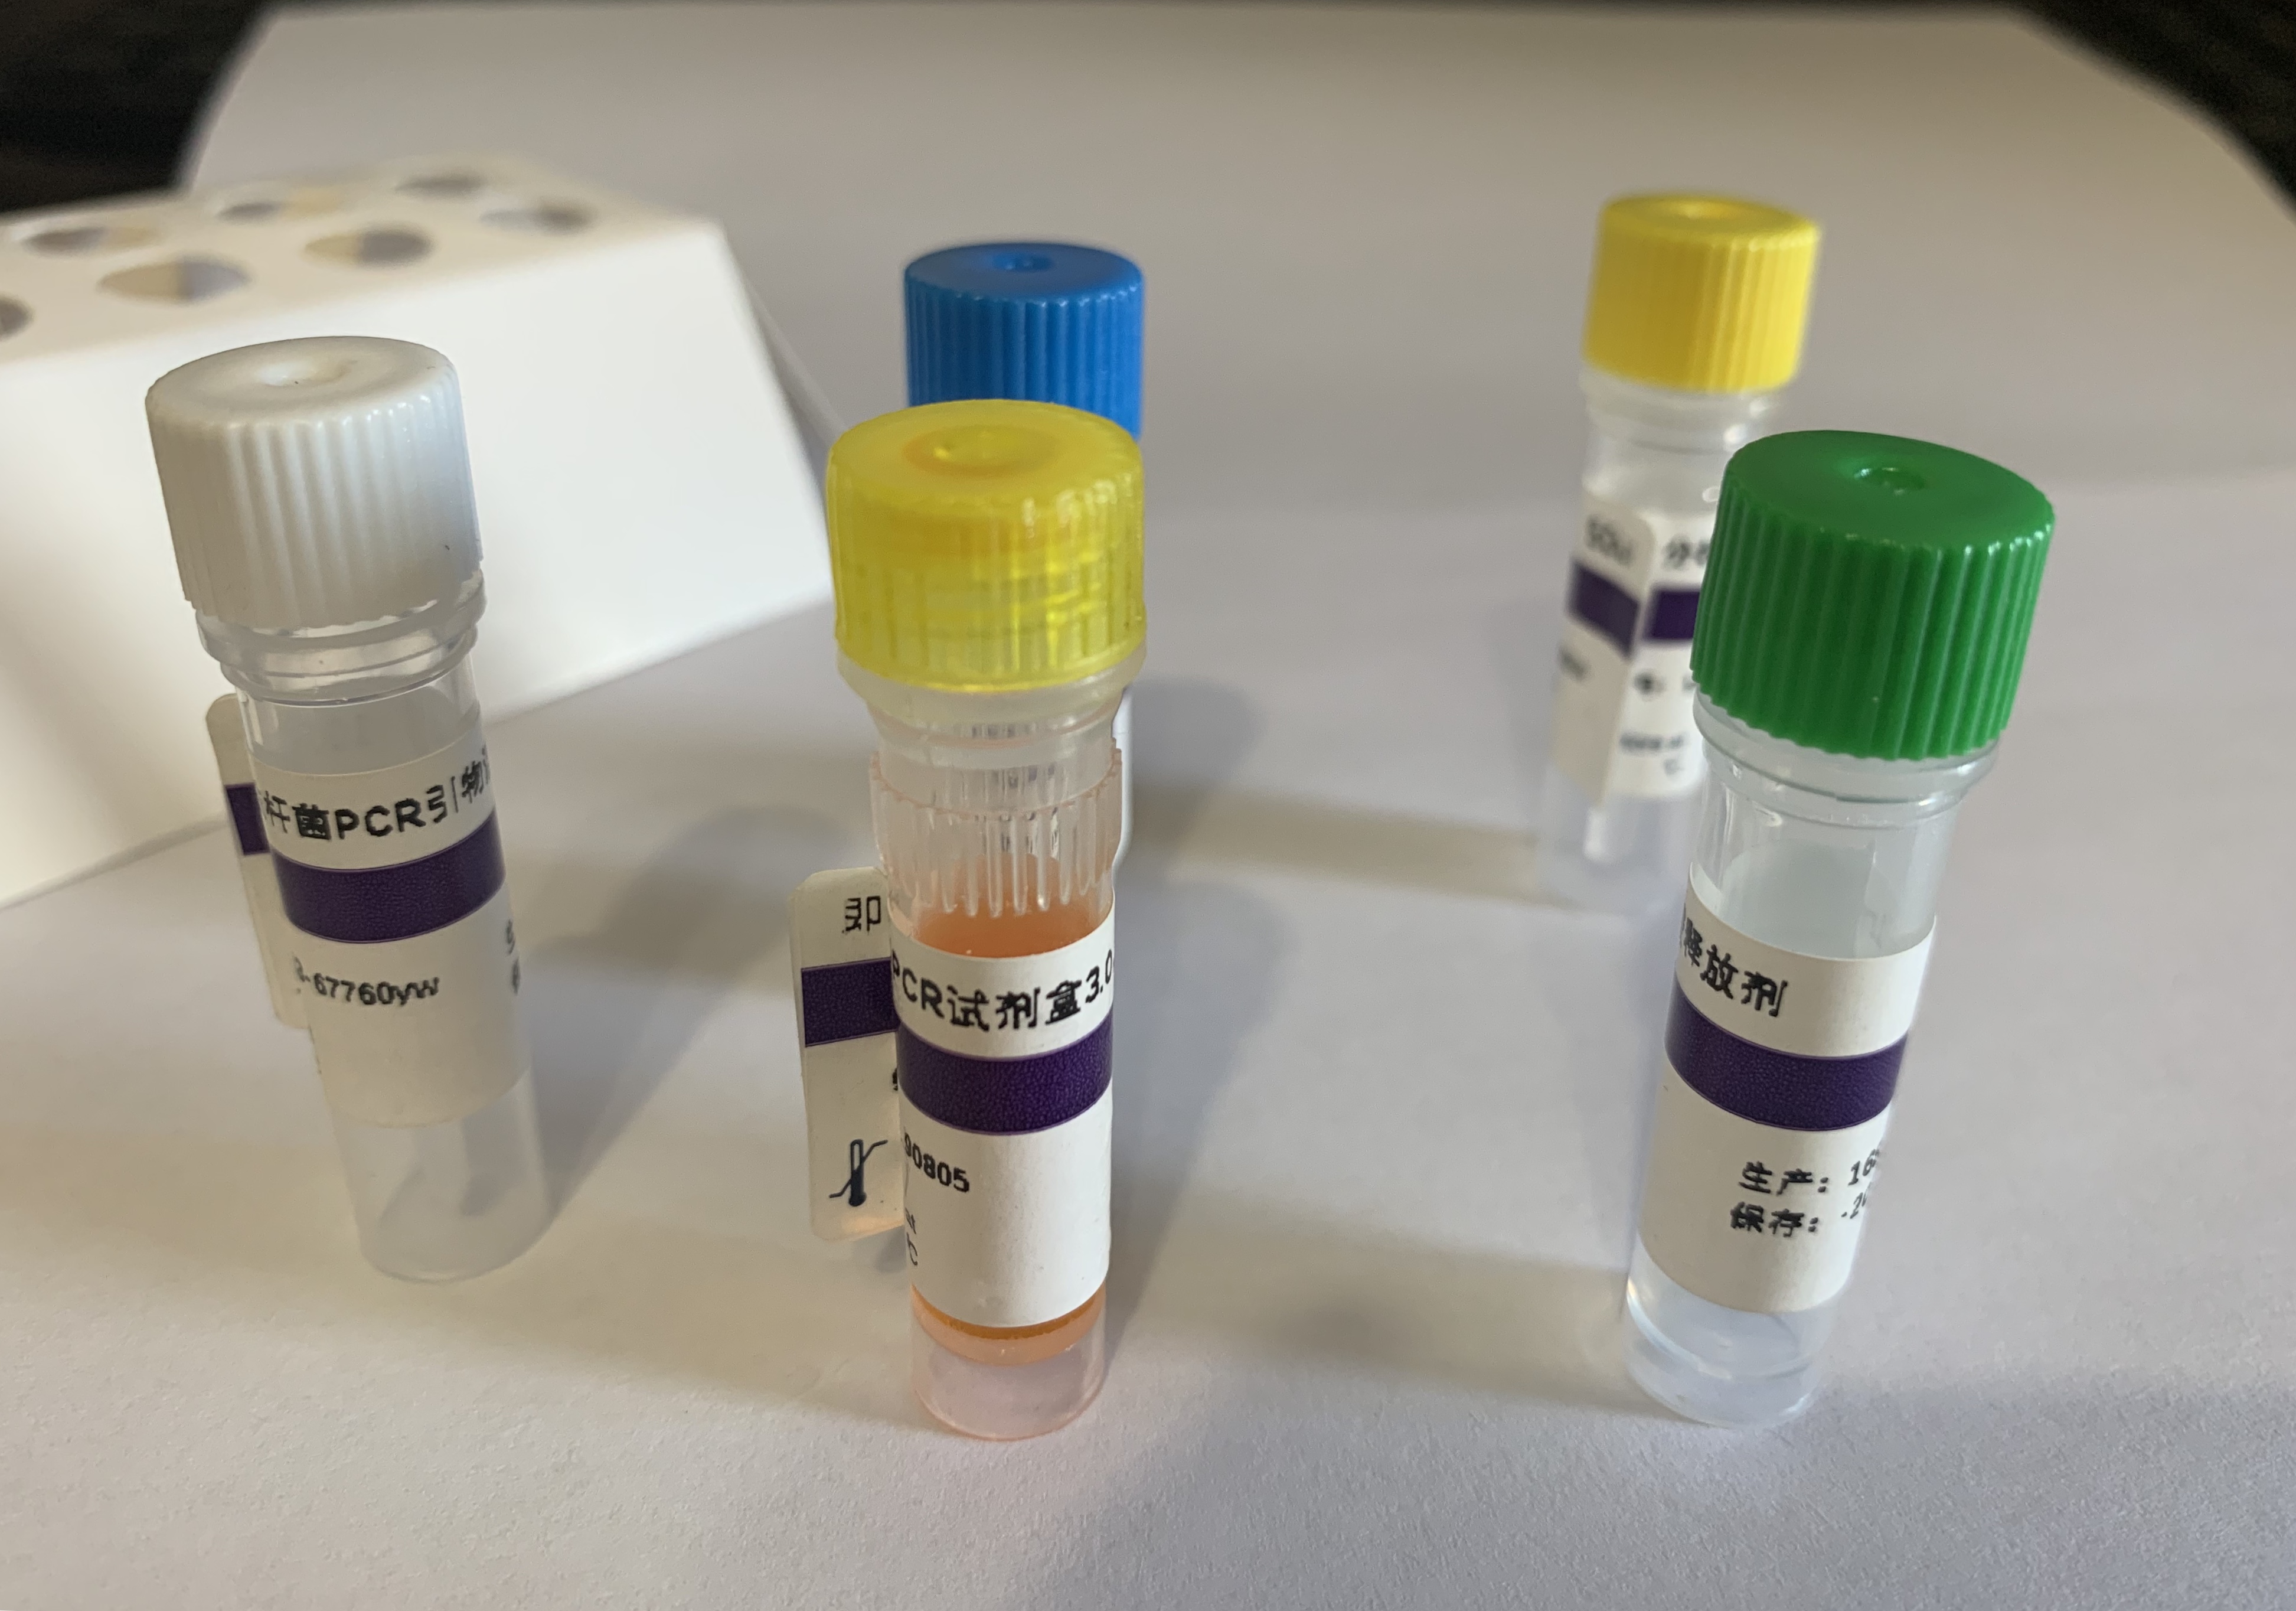 刚地弓形虫染料法荧光定量PCR试剂盒